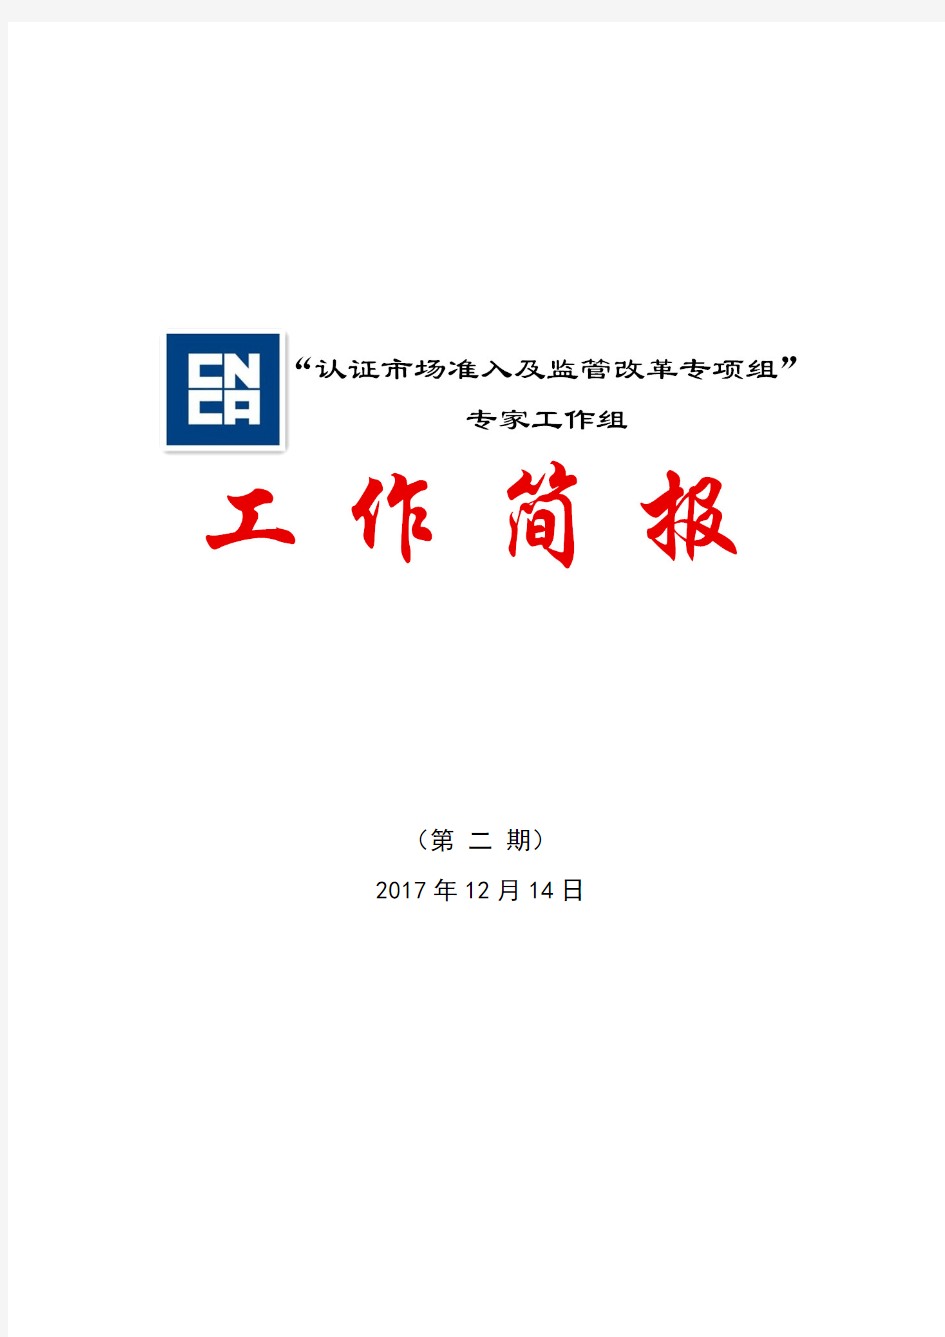 (第二期)年12月日-中国国家认证认可监督管理委员会